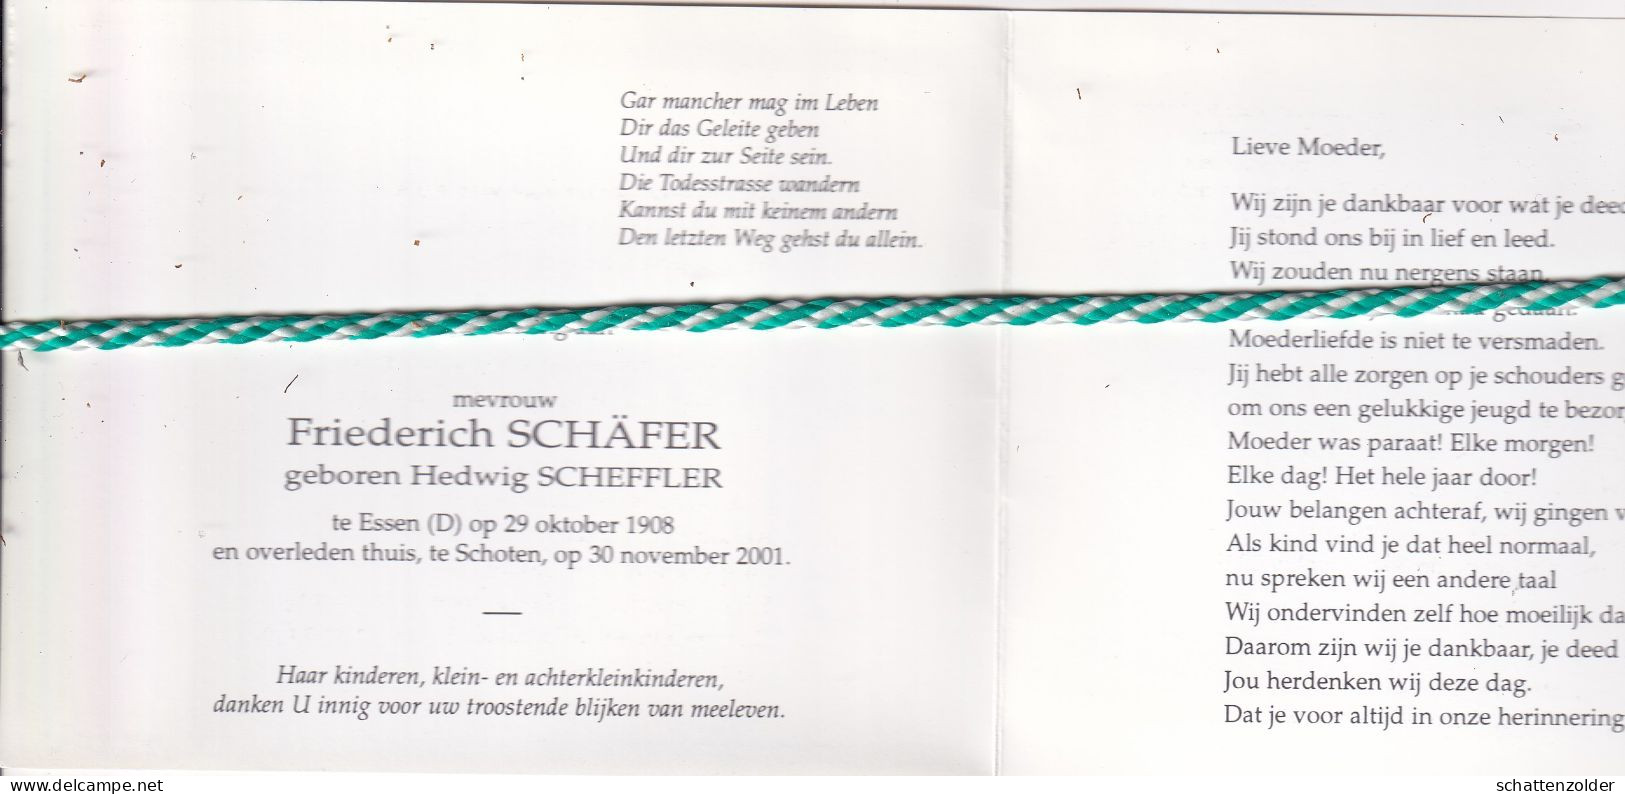 Hedwig Scheffler-Schäfer, Essen (D) 1908, Schoten 2001. Foto - Todesanzeige